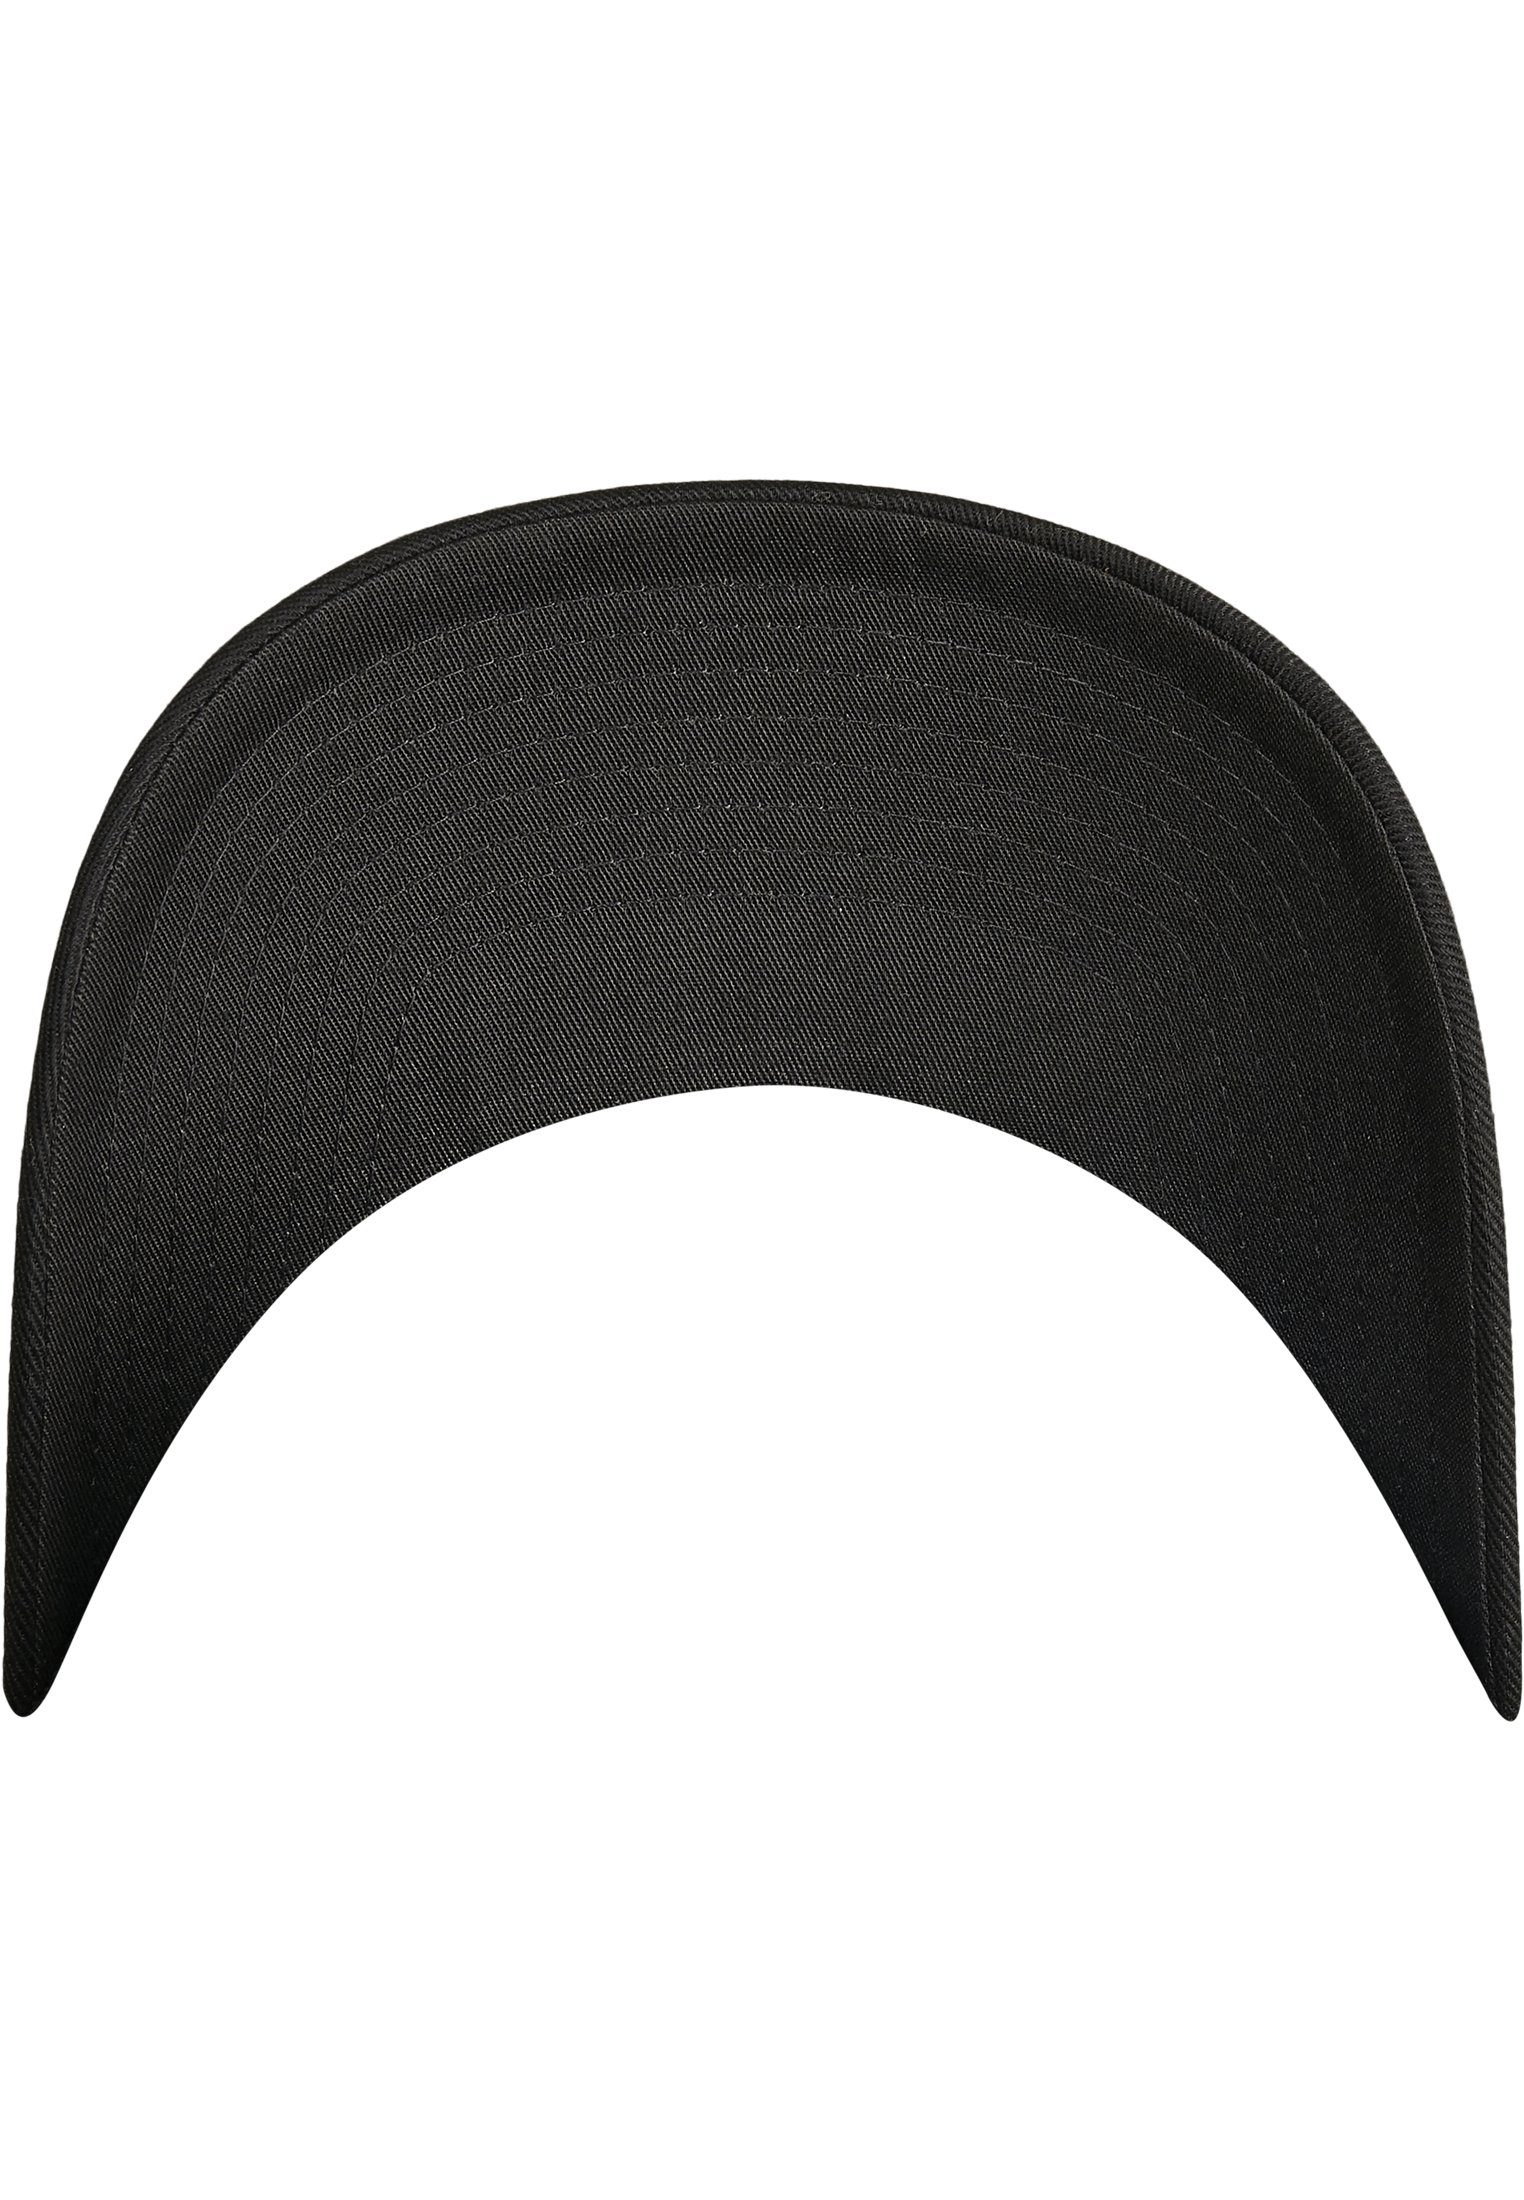 Flexfit black/black Accessoires Cap Wooly Combed Flexfit Adjustable Flex